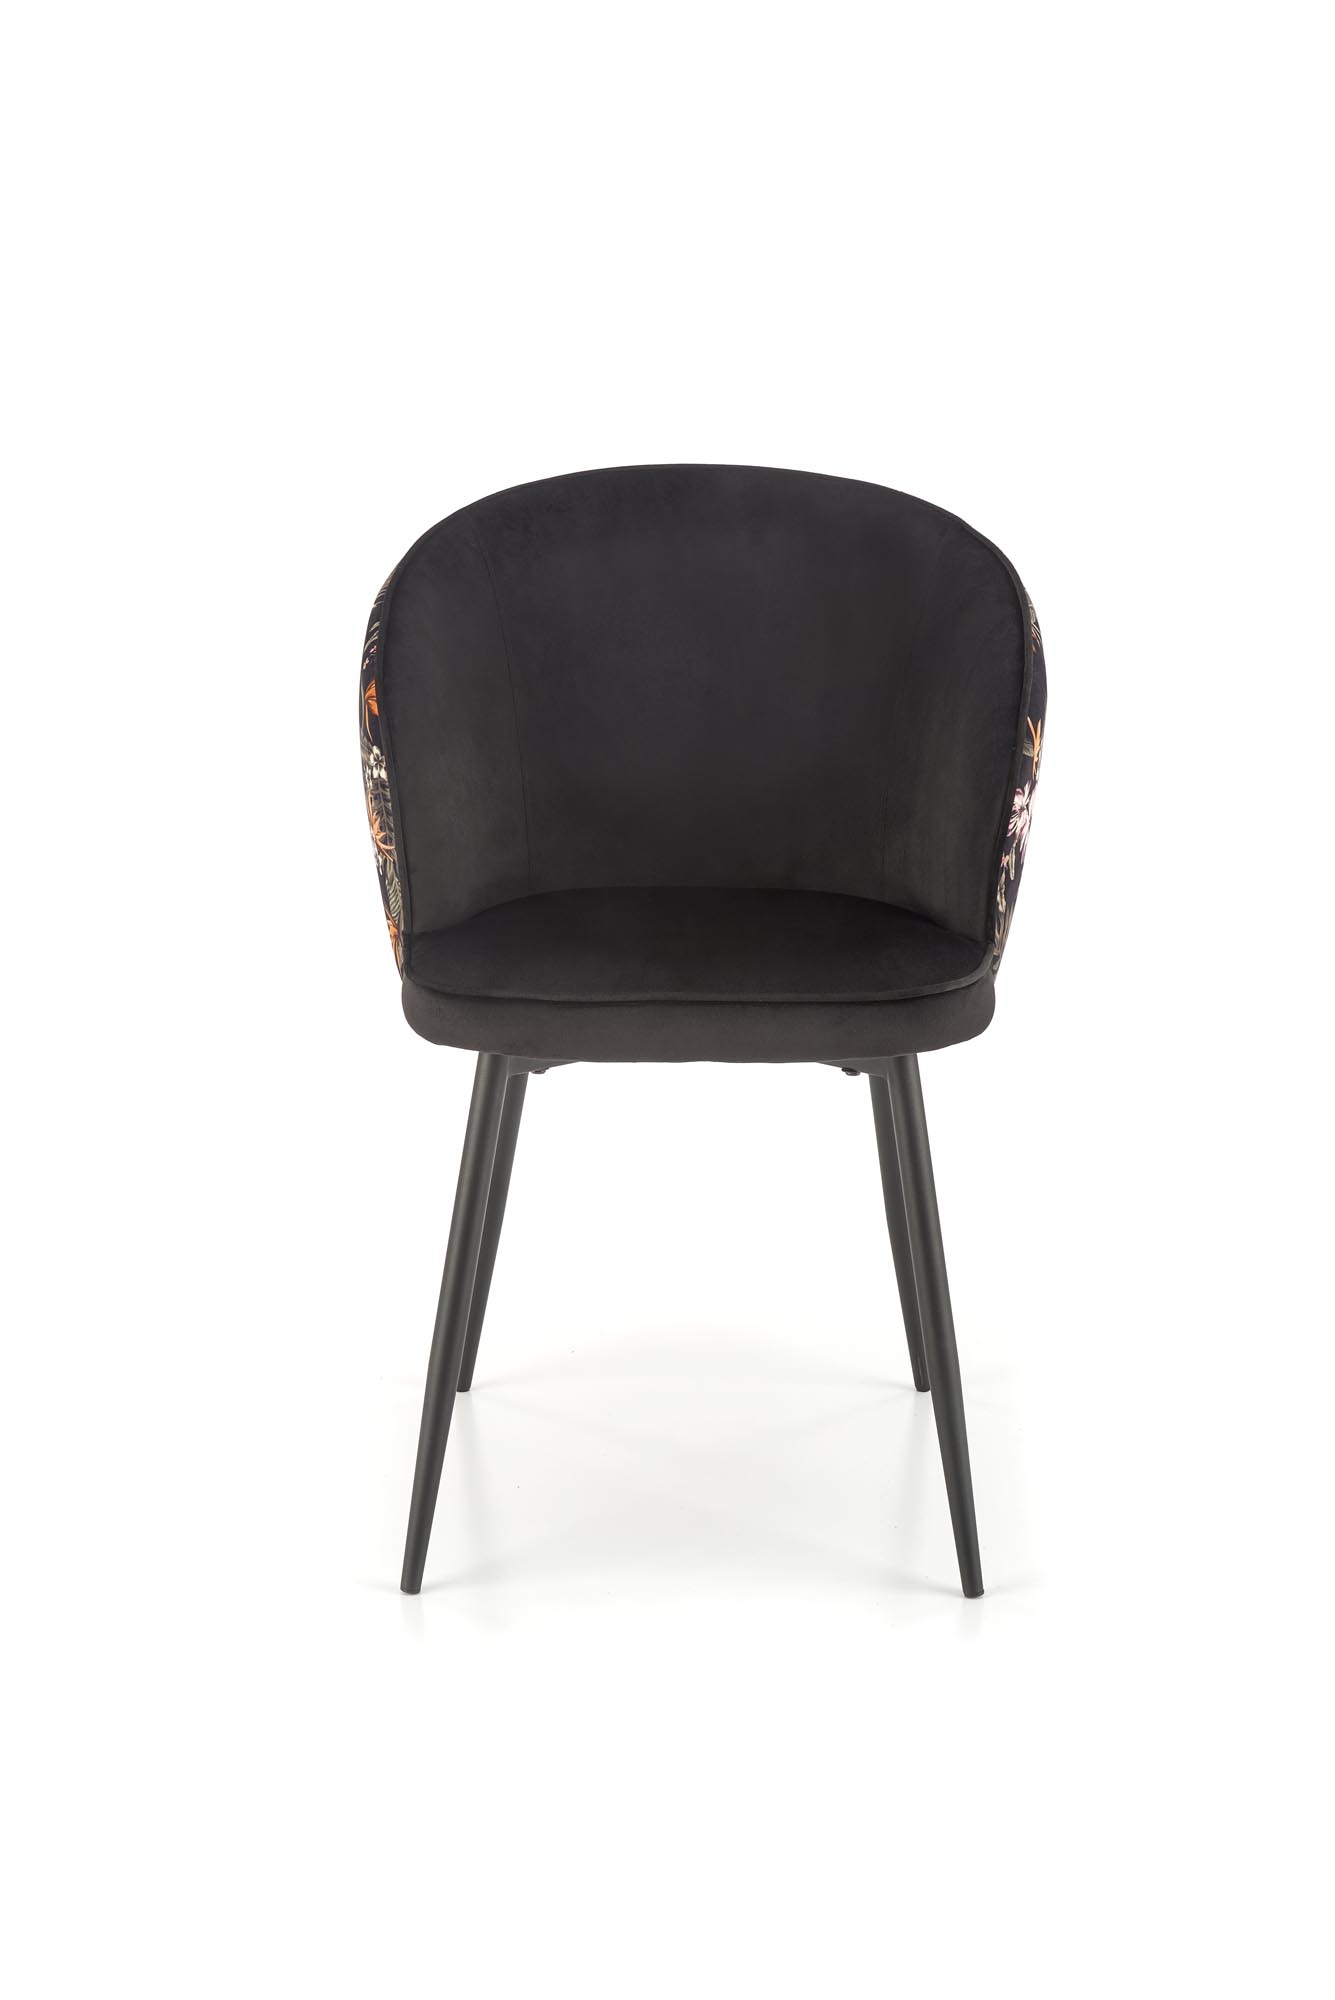 Scaun tapițat K506 - multicolor Židle čalouněné k506 - Černý